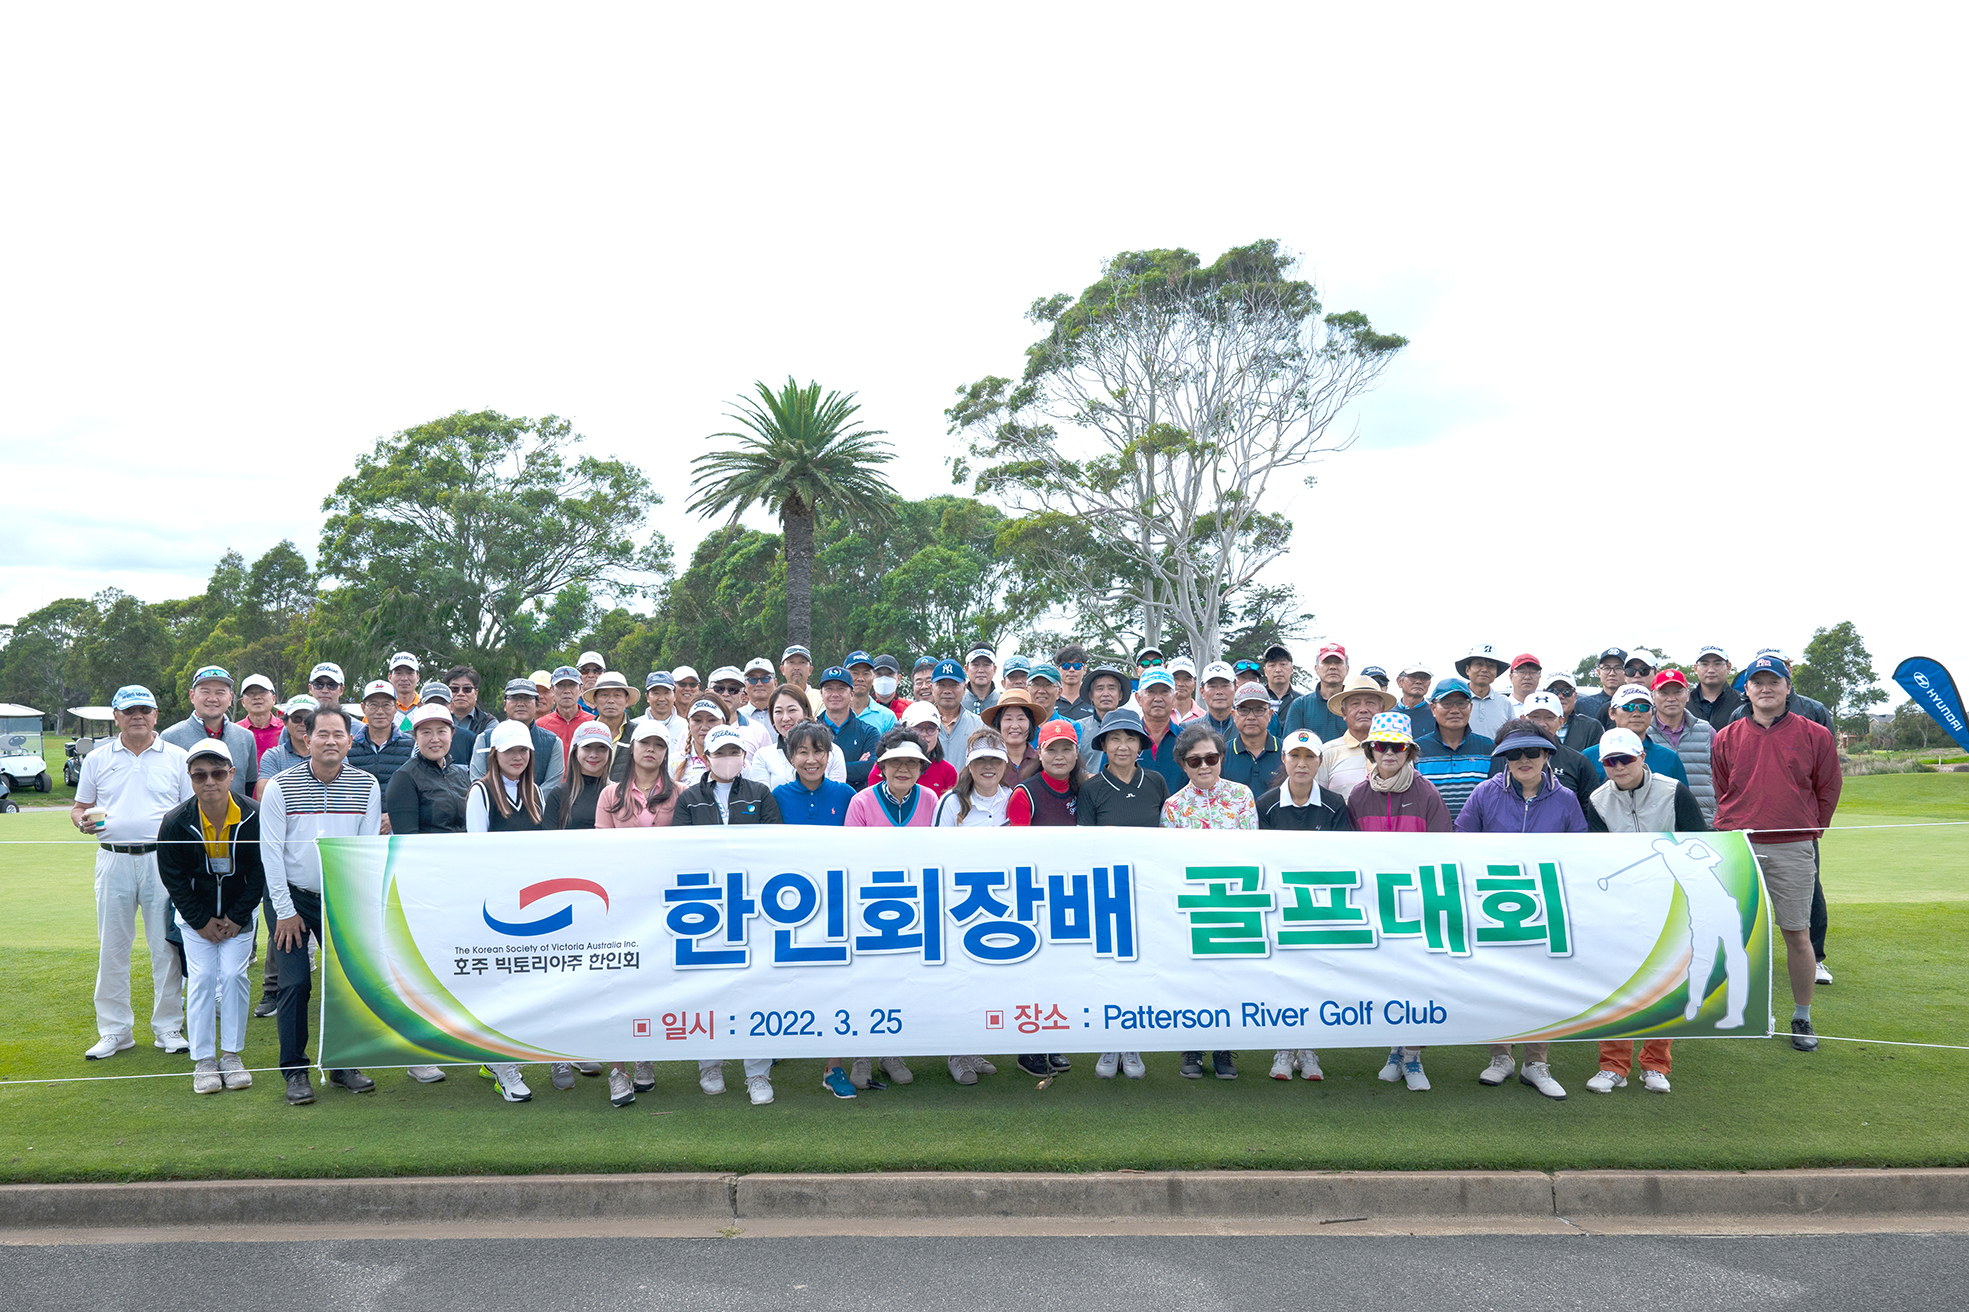 한인회 출범 50주년 기념, 한인회장배 골프대회 성황리에 개최